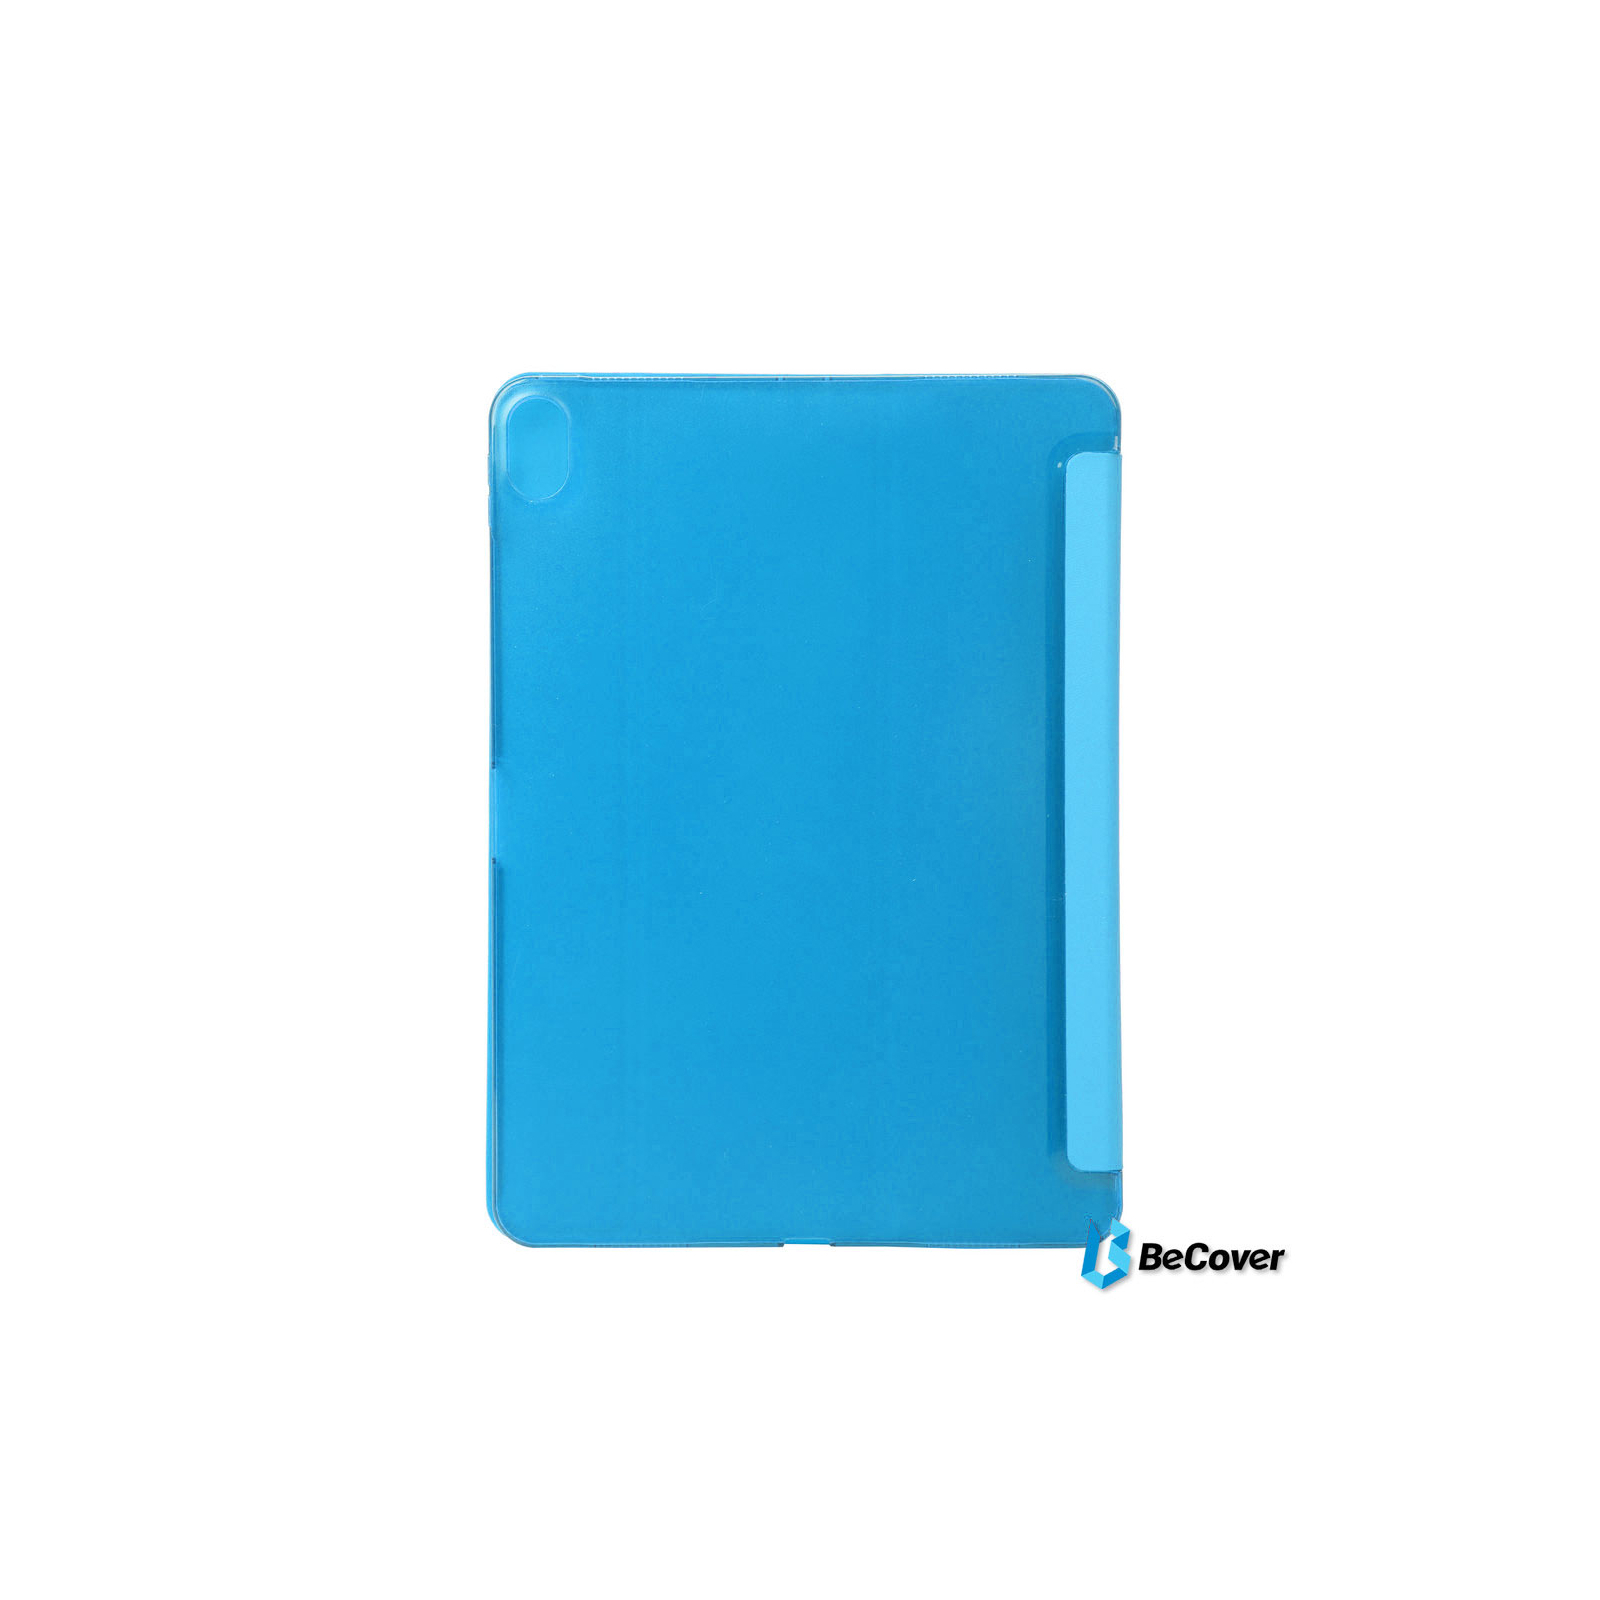 Чехол для планшета BeCover Smart Case для Apple iPad Pro 11 Red (703029) изображение 2